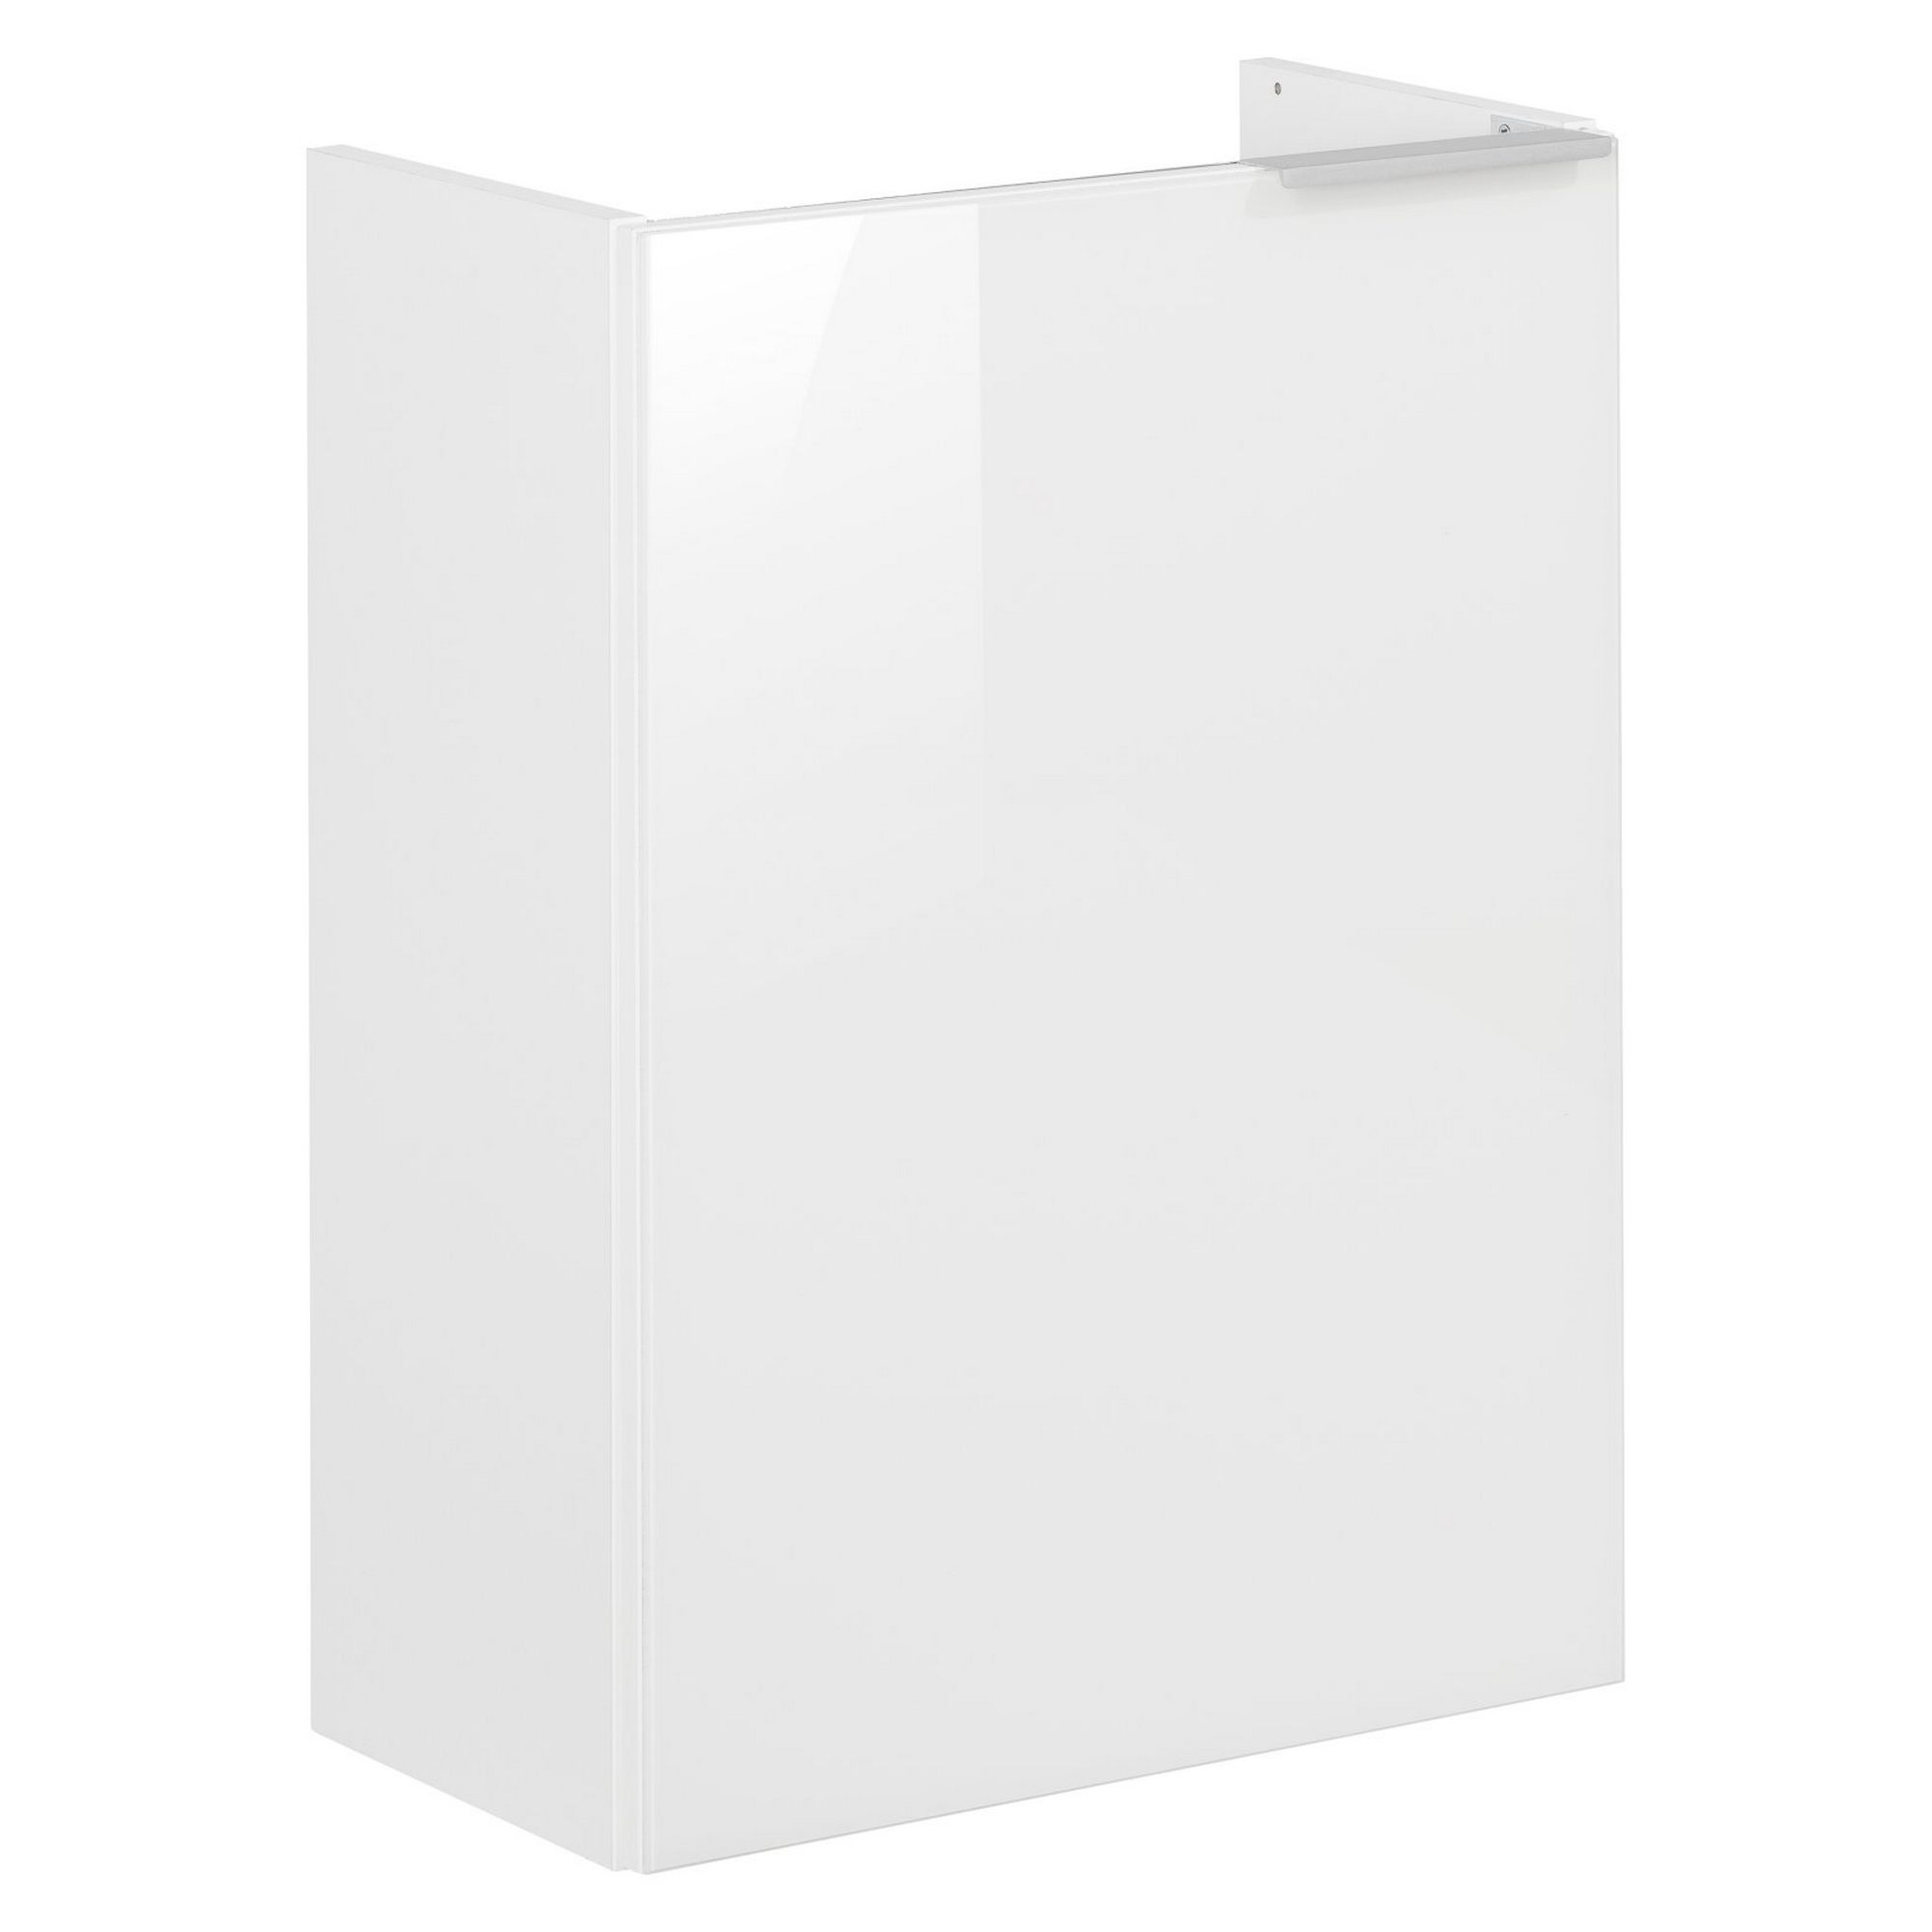 Waschtischunterschrank 'Kara' weiß 44 x 60 x 24,5 cm rechts + product picture